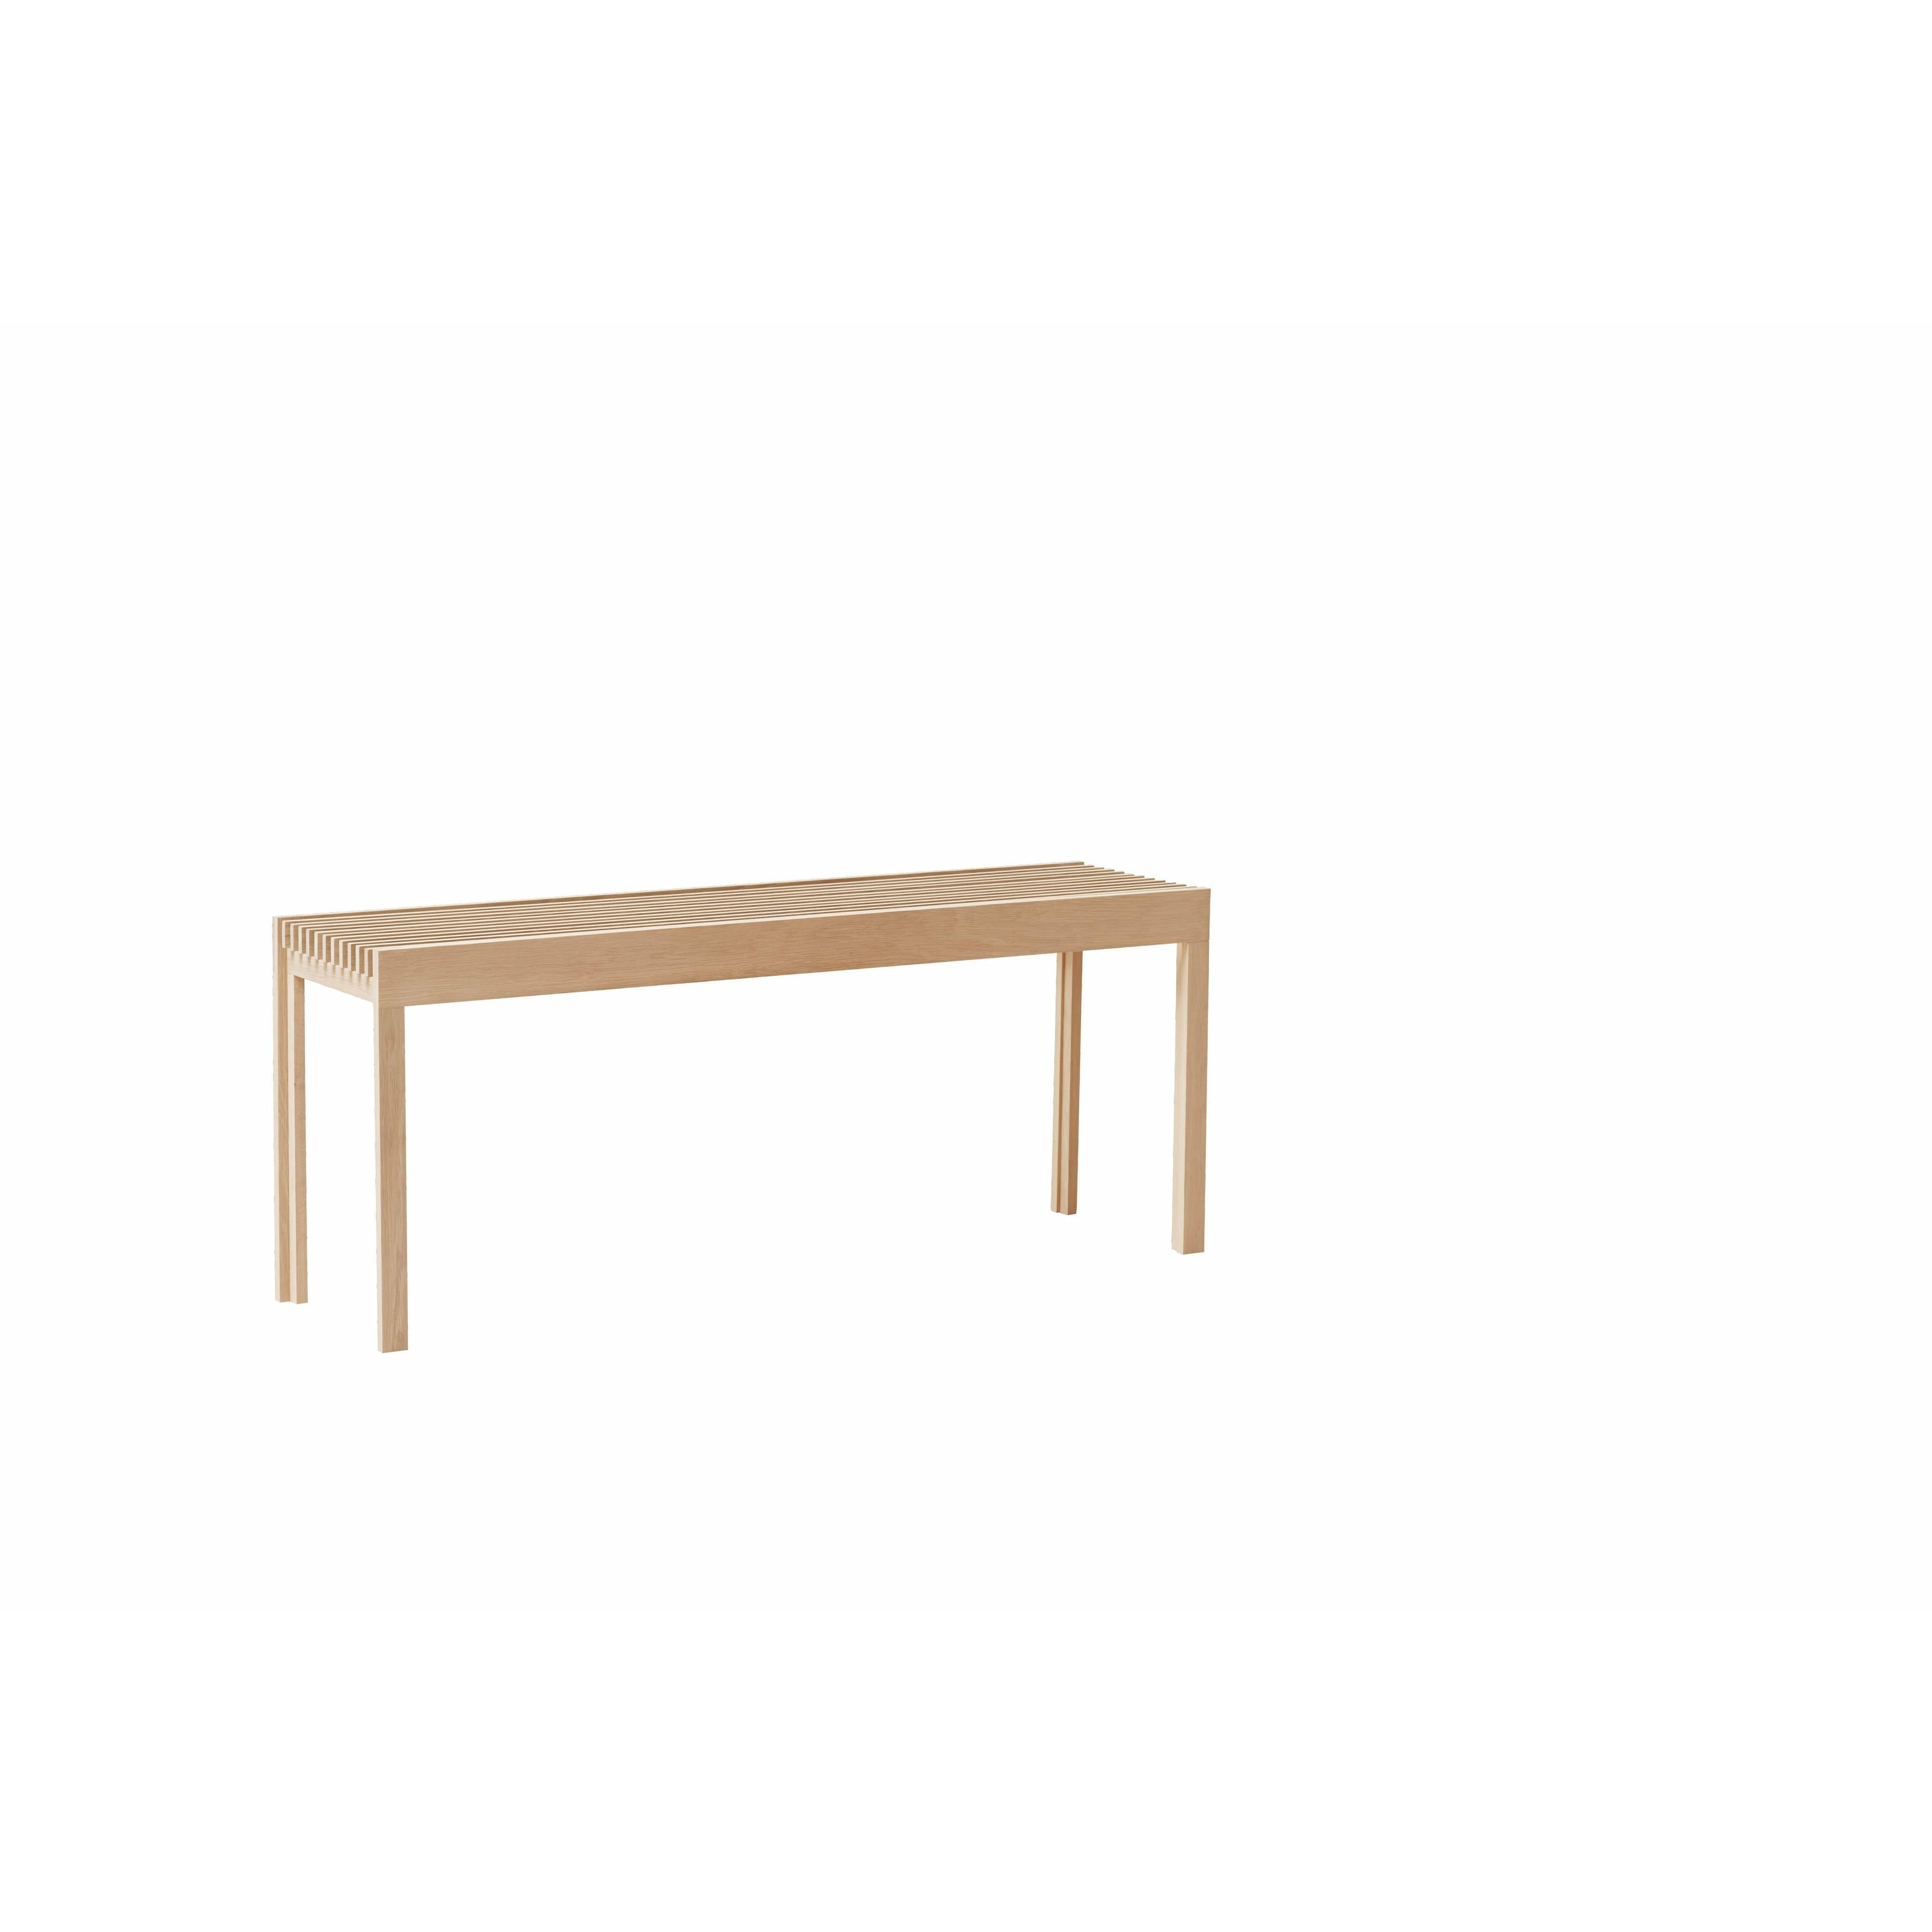 Form & Refine Lightweight Bench. White Oak